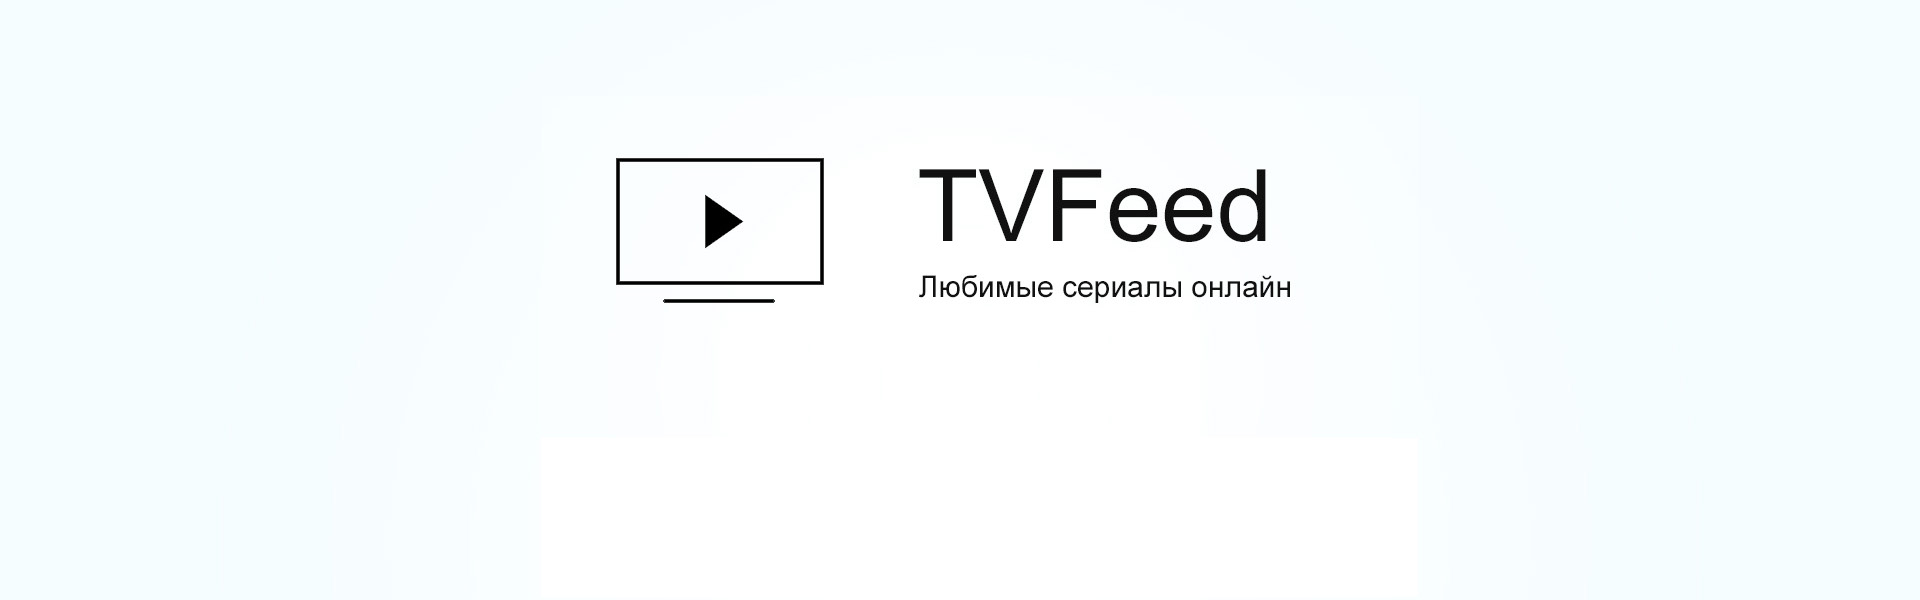 Обсуждение TVFeed